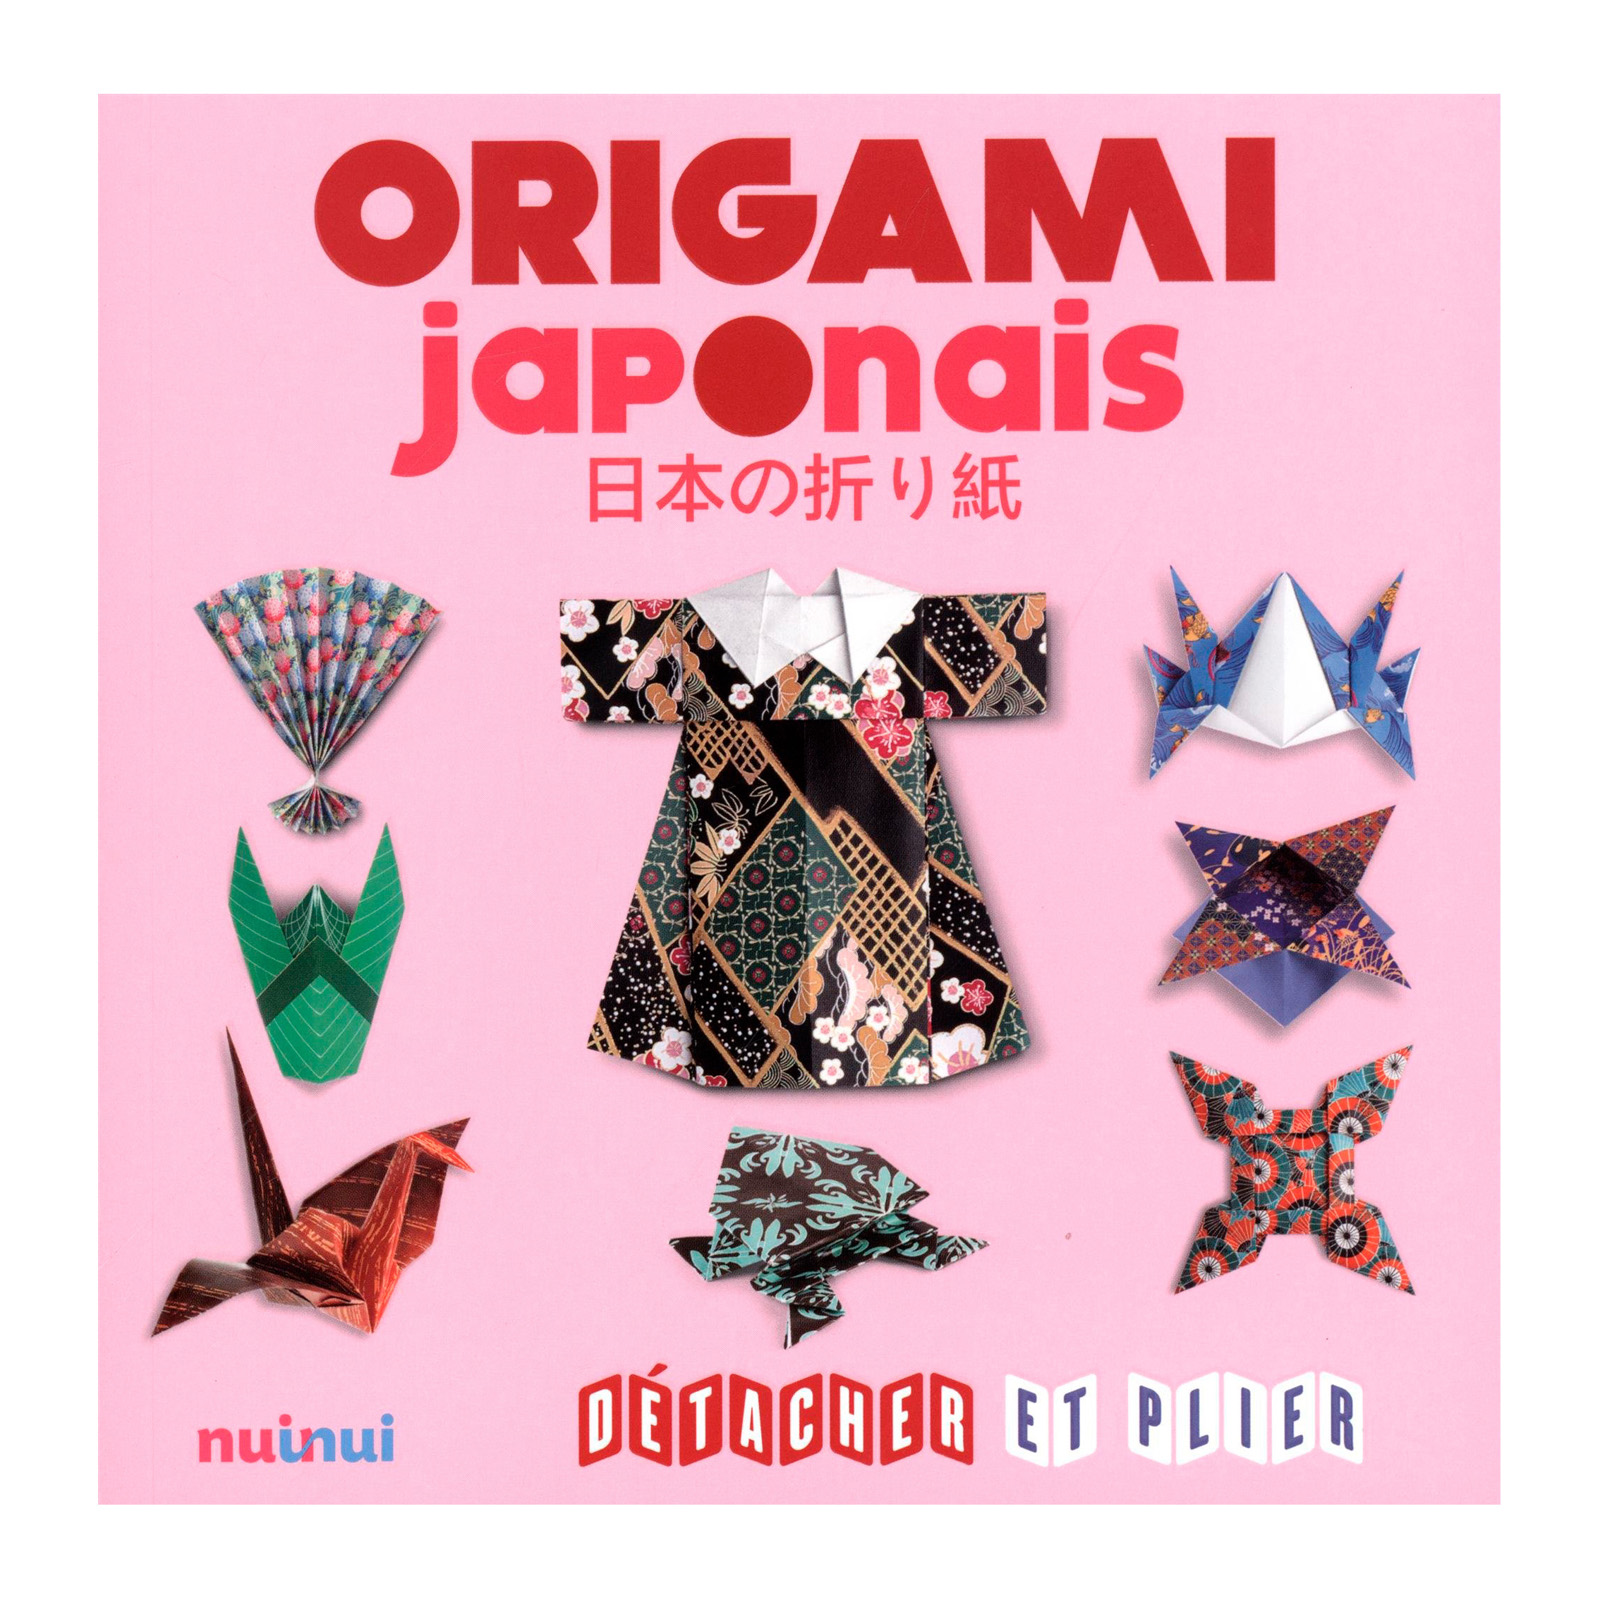  Origami japonais